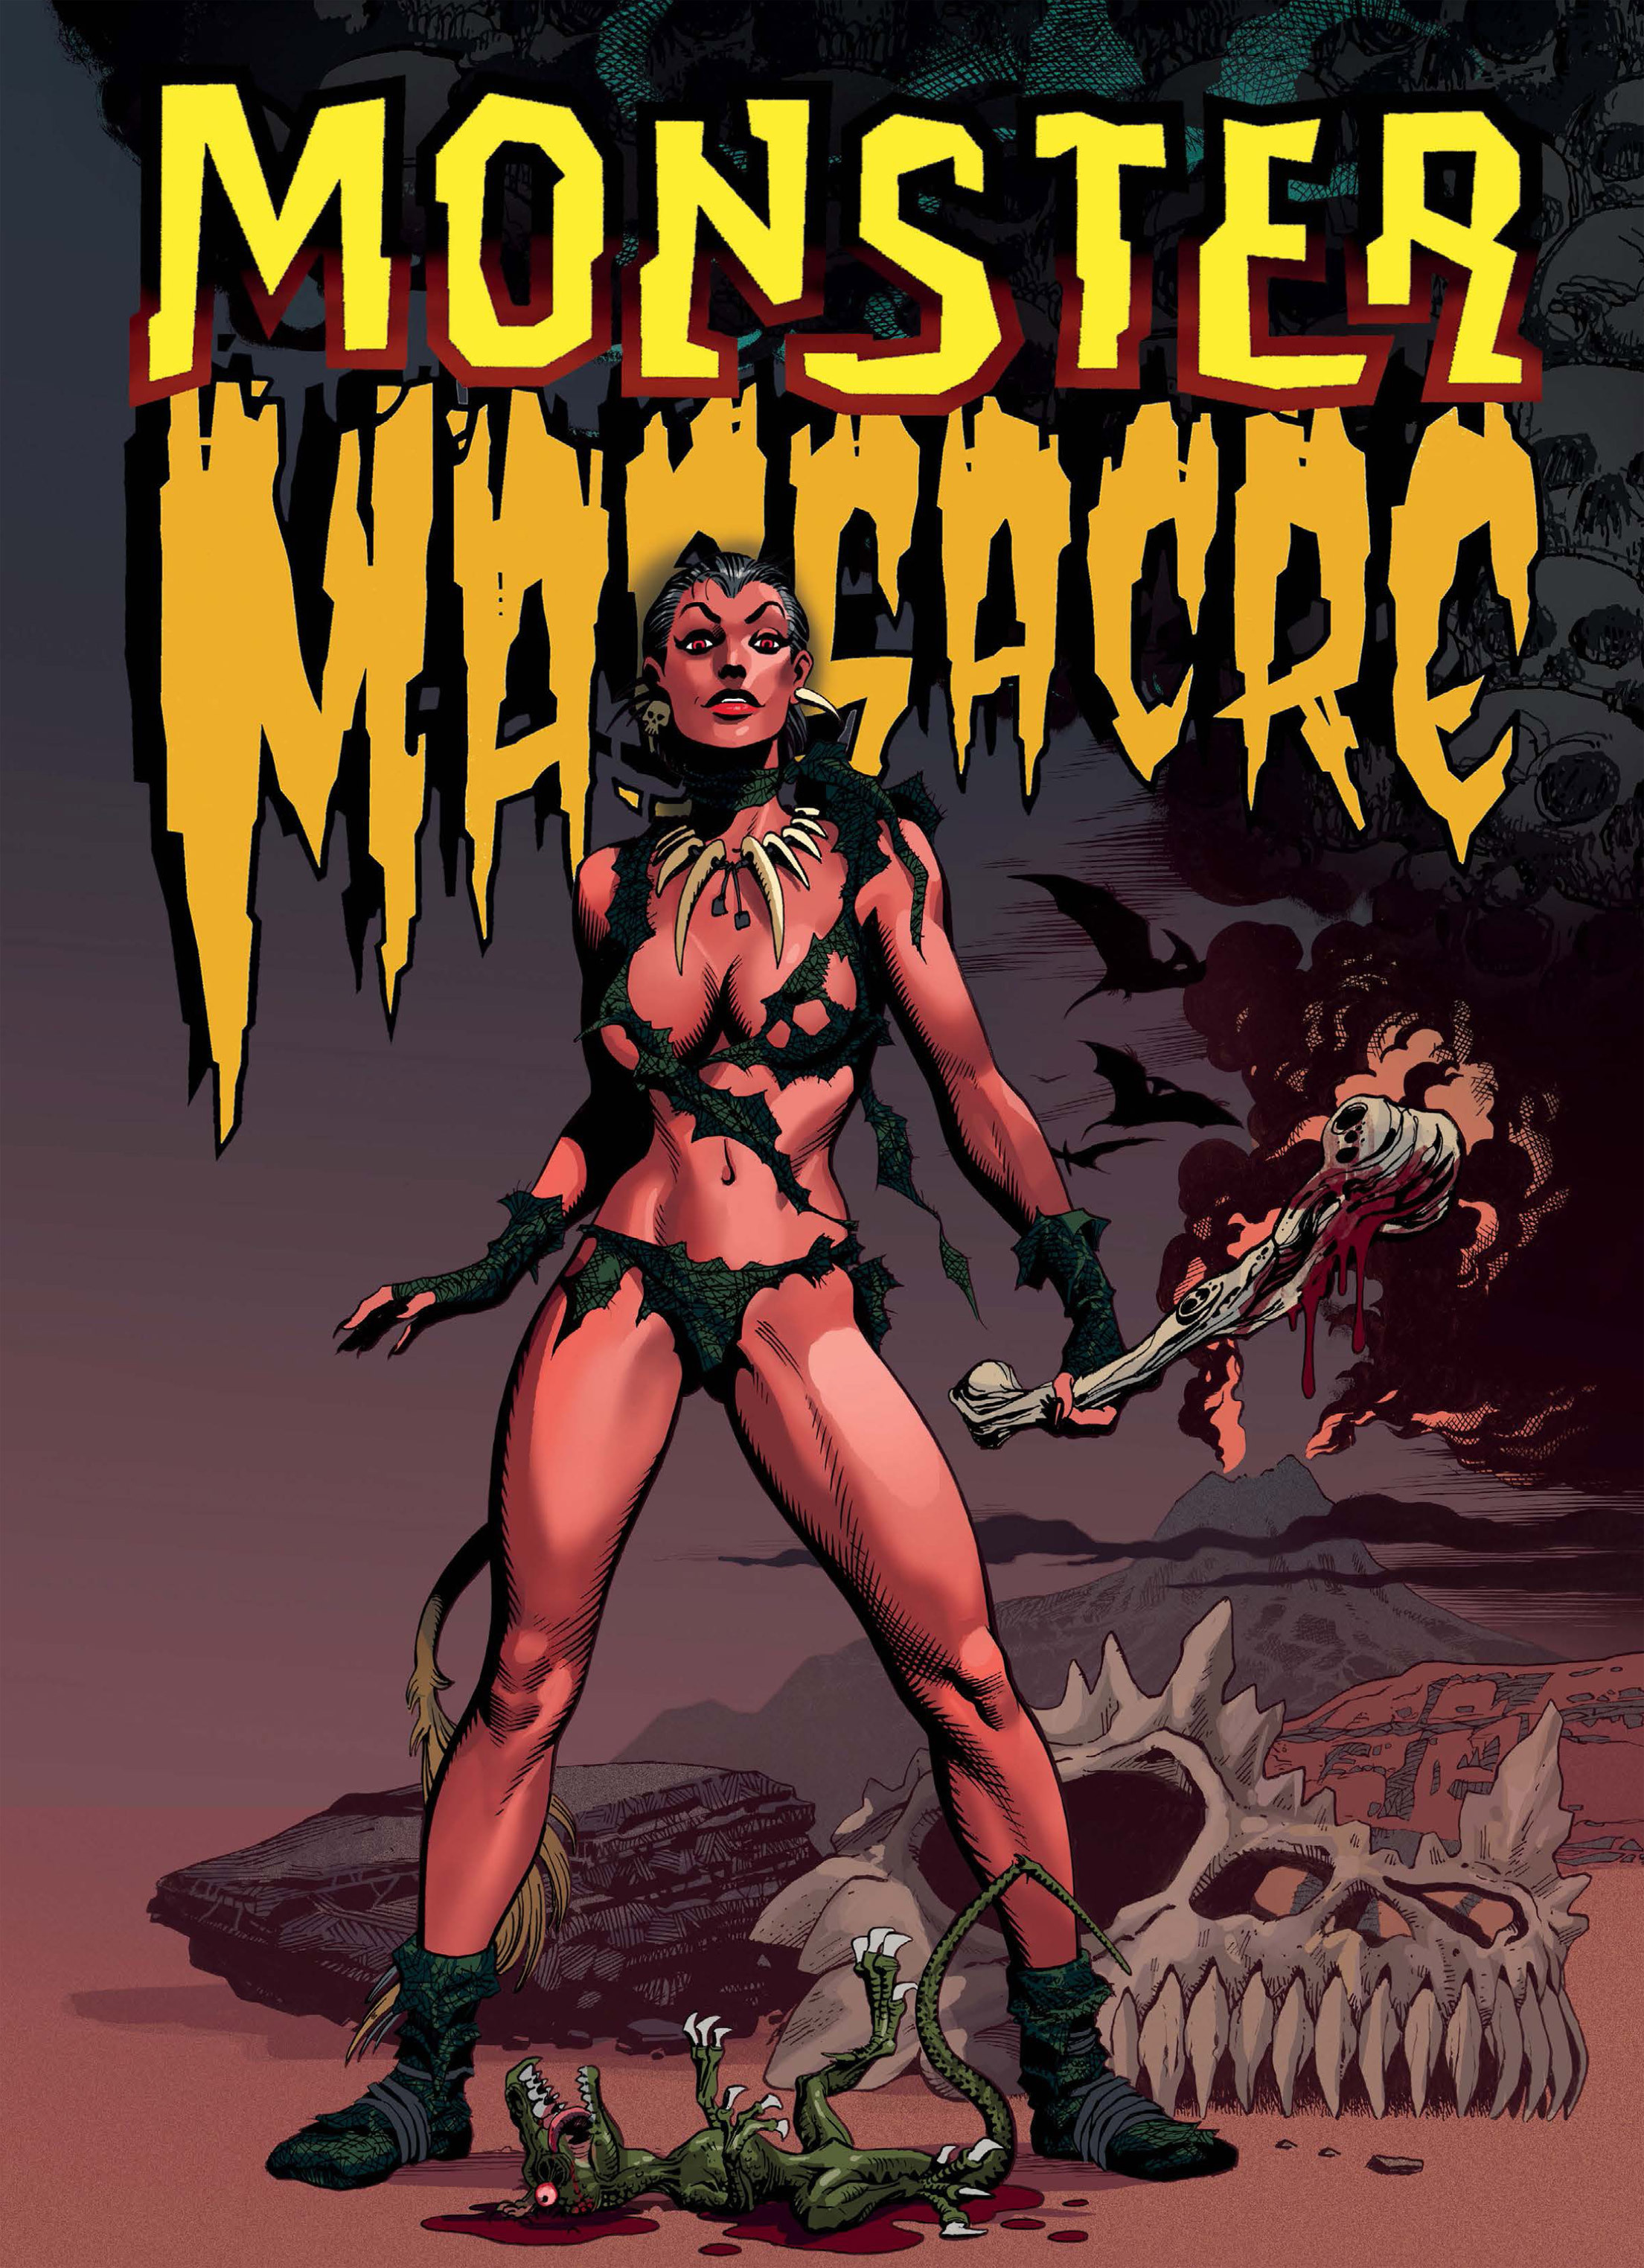 Read online Monster Massacre comic -  Issue # TPB 1 - 3